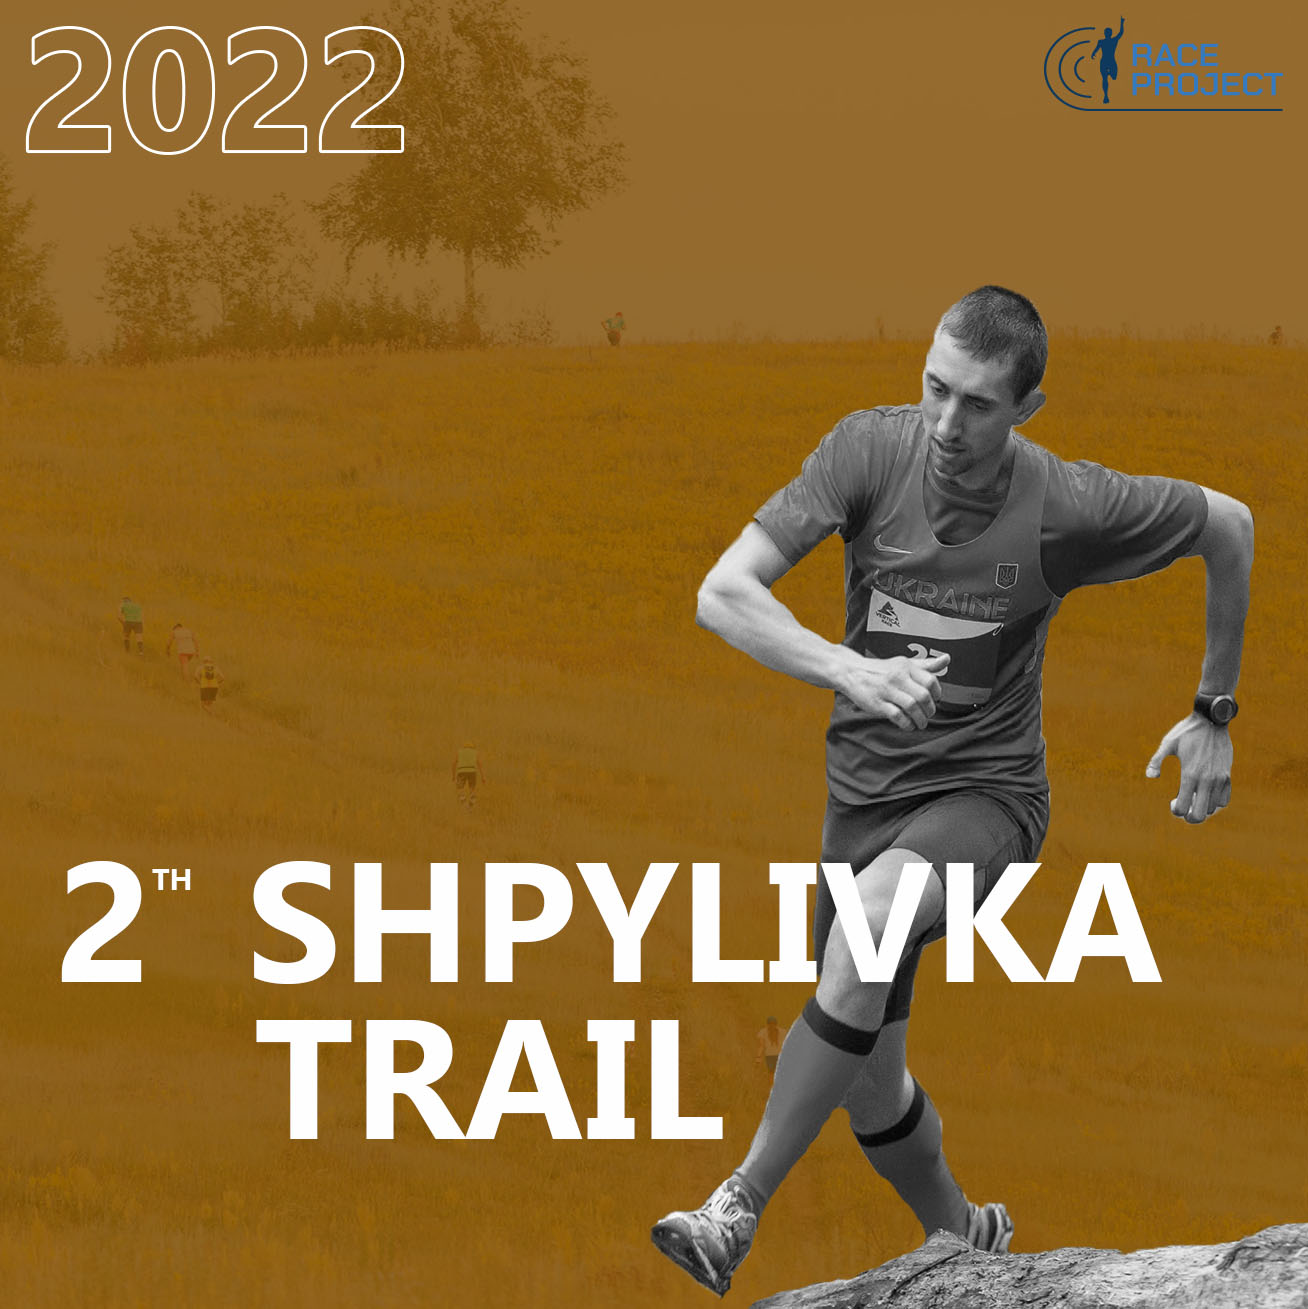 2nd Shpylivka trail 2022